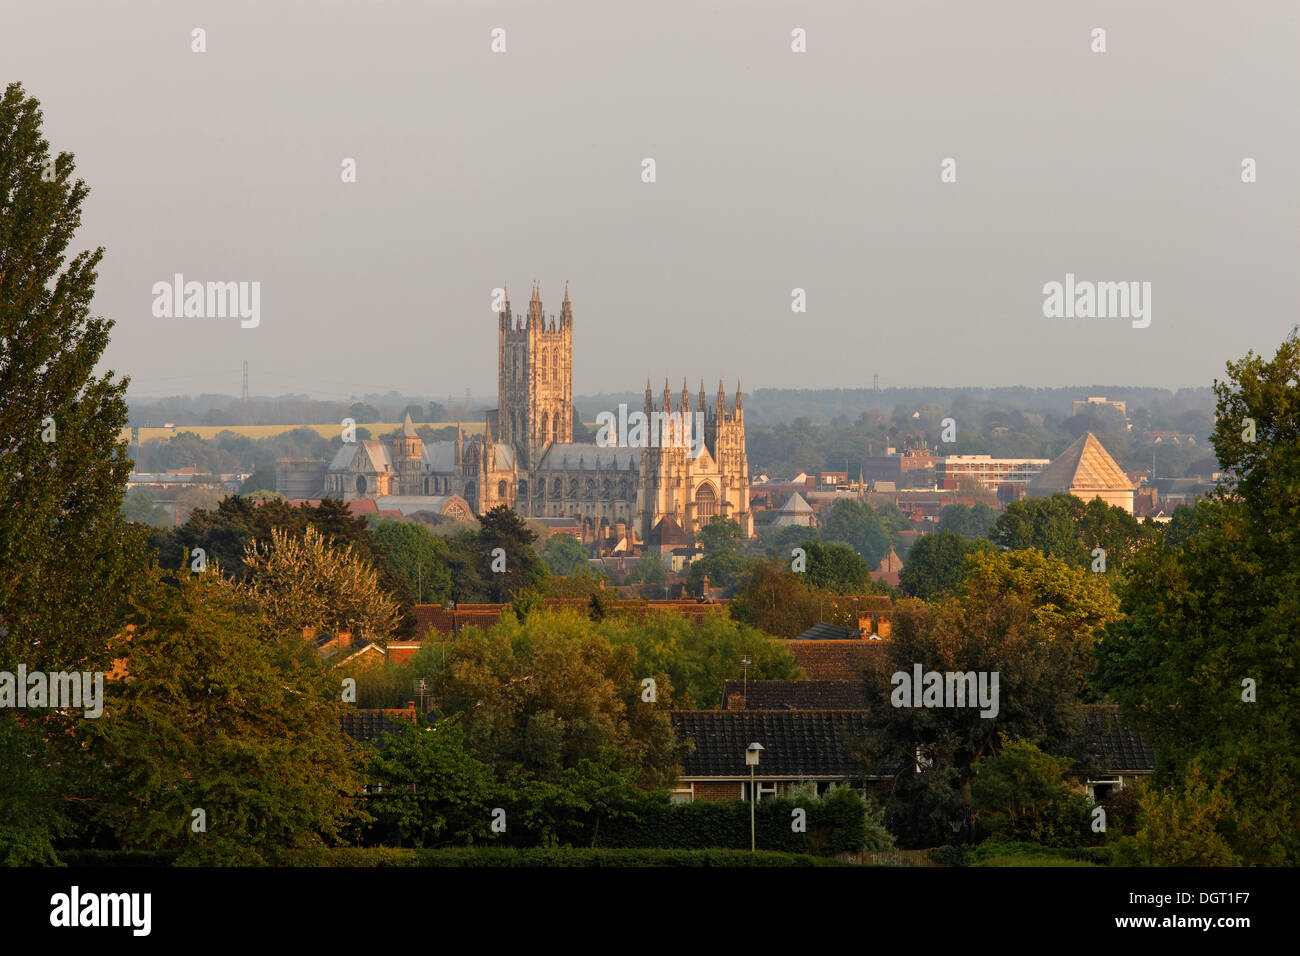 La Cathédrale de Canterbury, l'humeur du soir, Angleterre du Sud-Est, de l'administration du comté de Kent, Angleterre, Royaume-Uni, Europe Banque D'Images